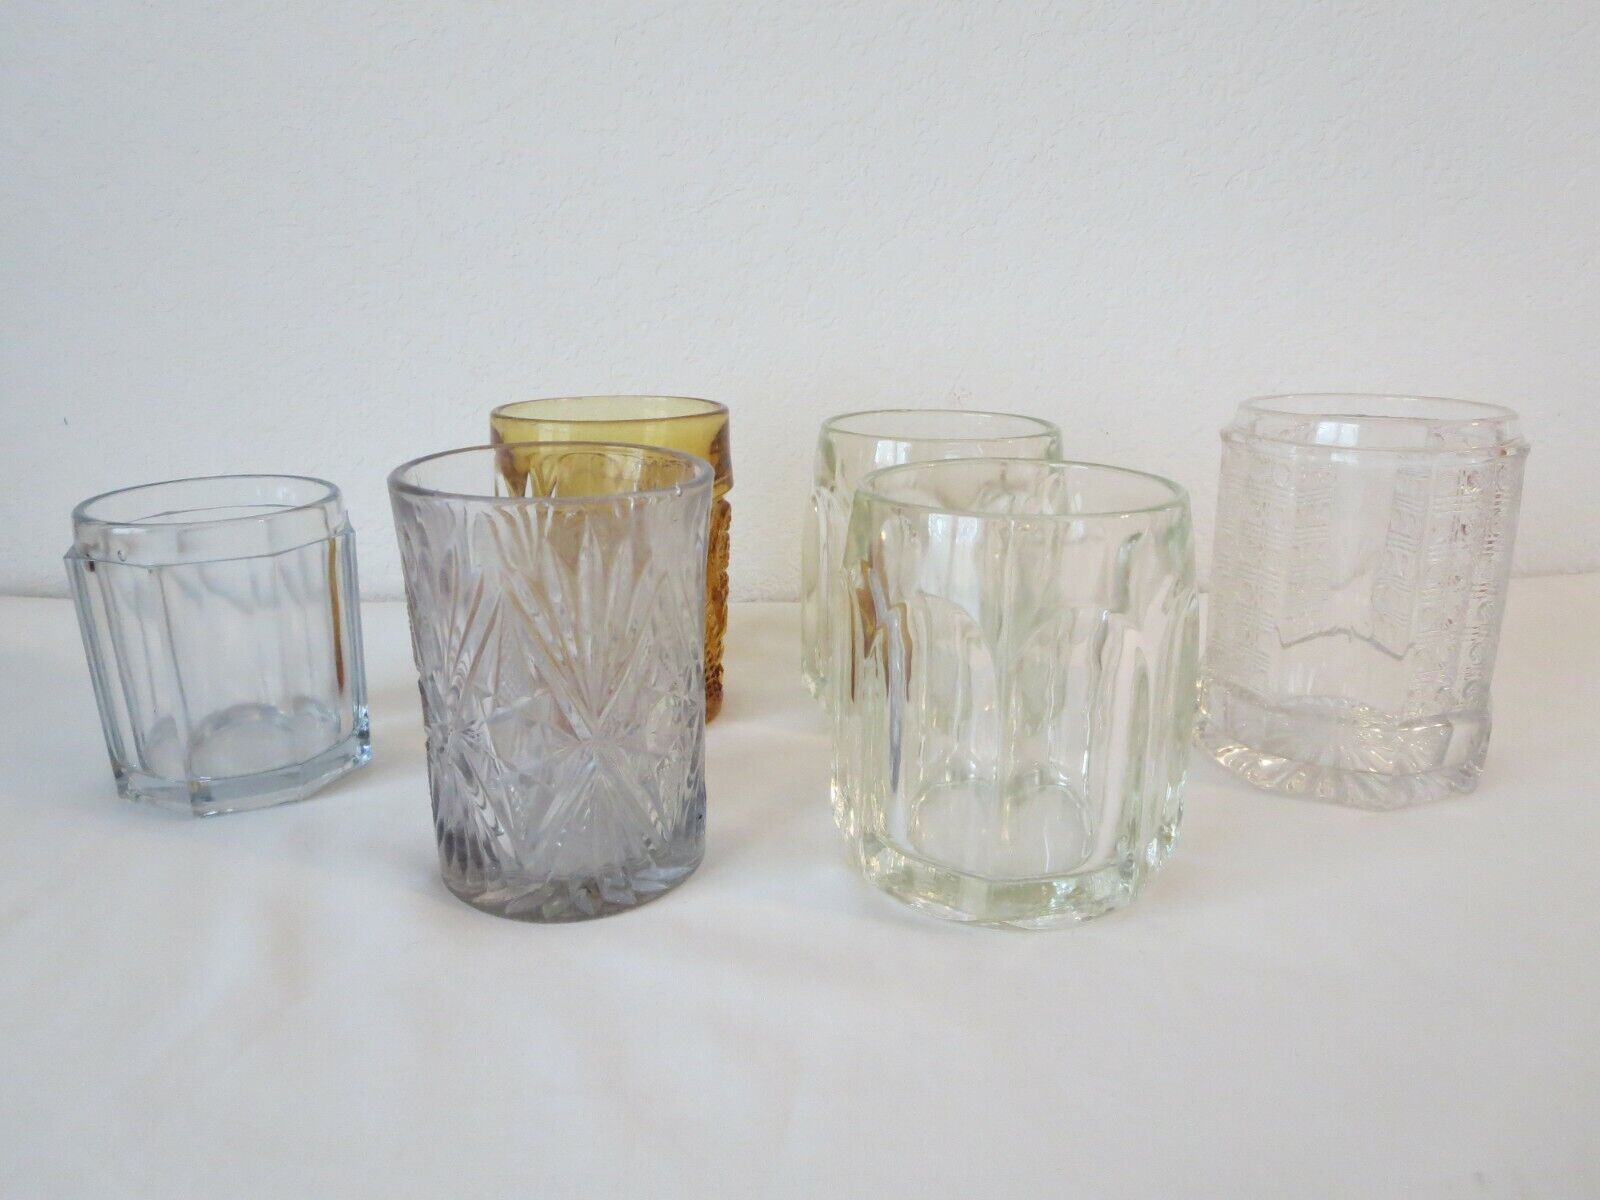 ANTIQUE Pickle Castor Jars Lot of 6 Vintage Glassware